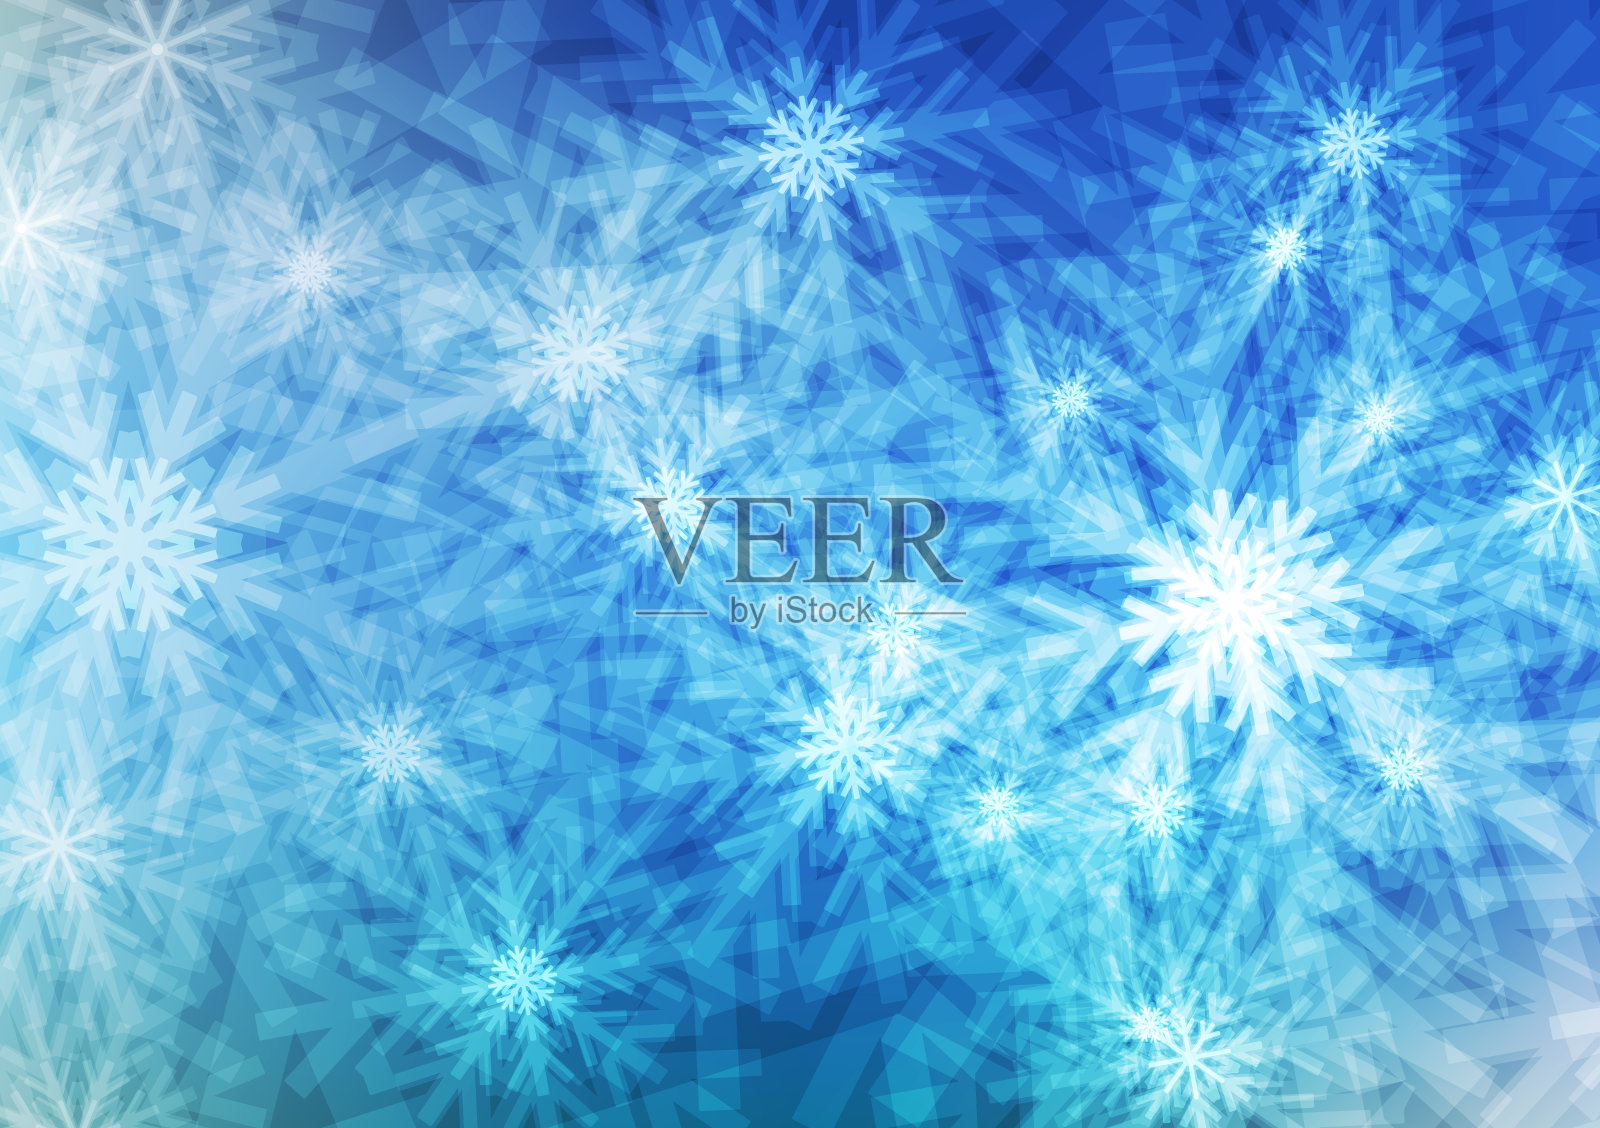 蓝色背景上的雪花或水晶;冬季和圣诞节概念;壁纸等设计;有空格和文本输入;向量;插图。插画图片素材